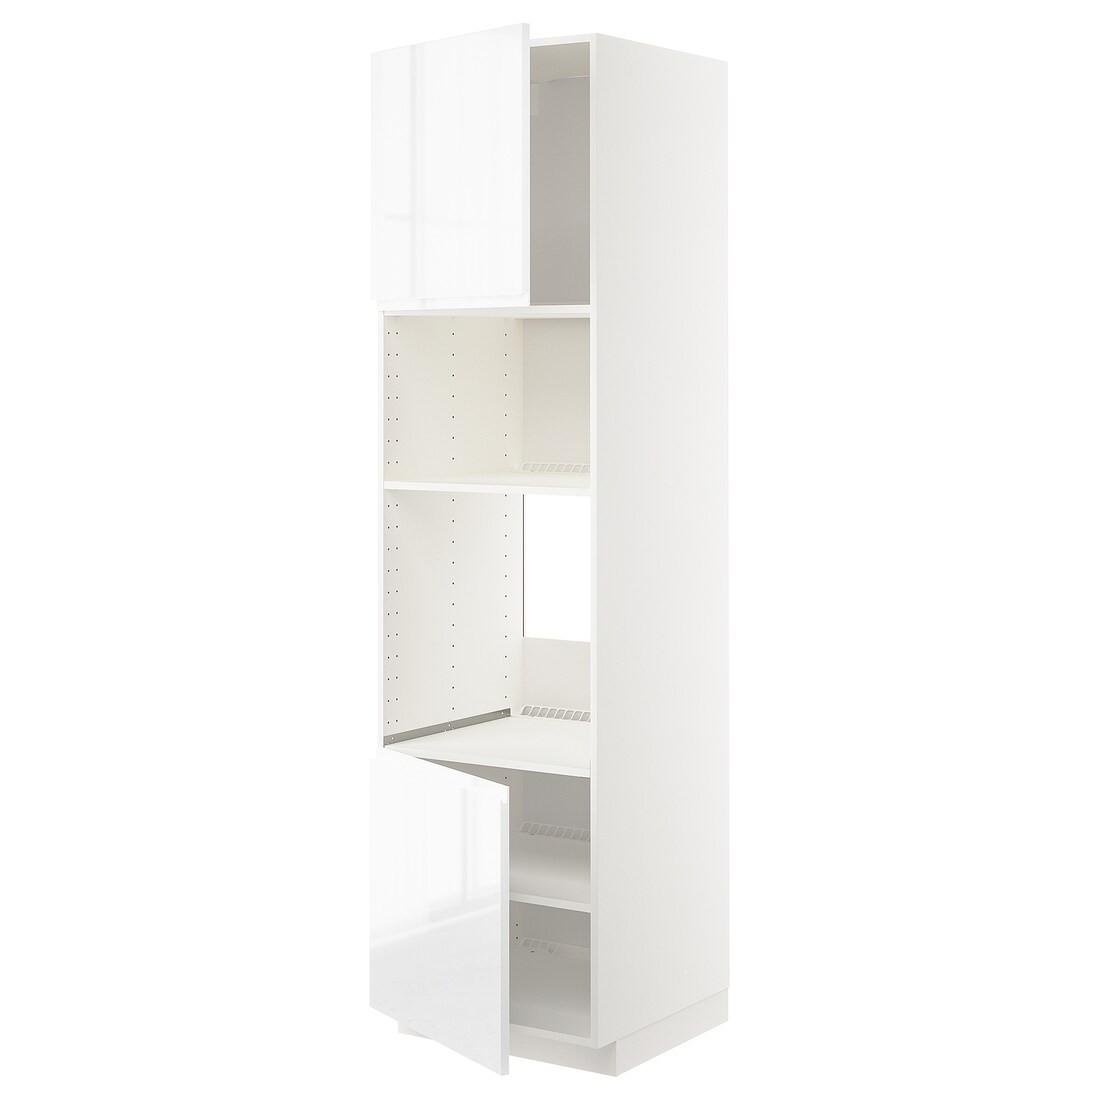 IKEA METOD МЕТОД Высокий шкаф для духовки / СВЧ, белый / Voxtorp глянцевый / белый, 60x60x220 см 99456883 994.568.83